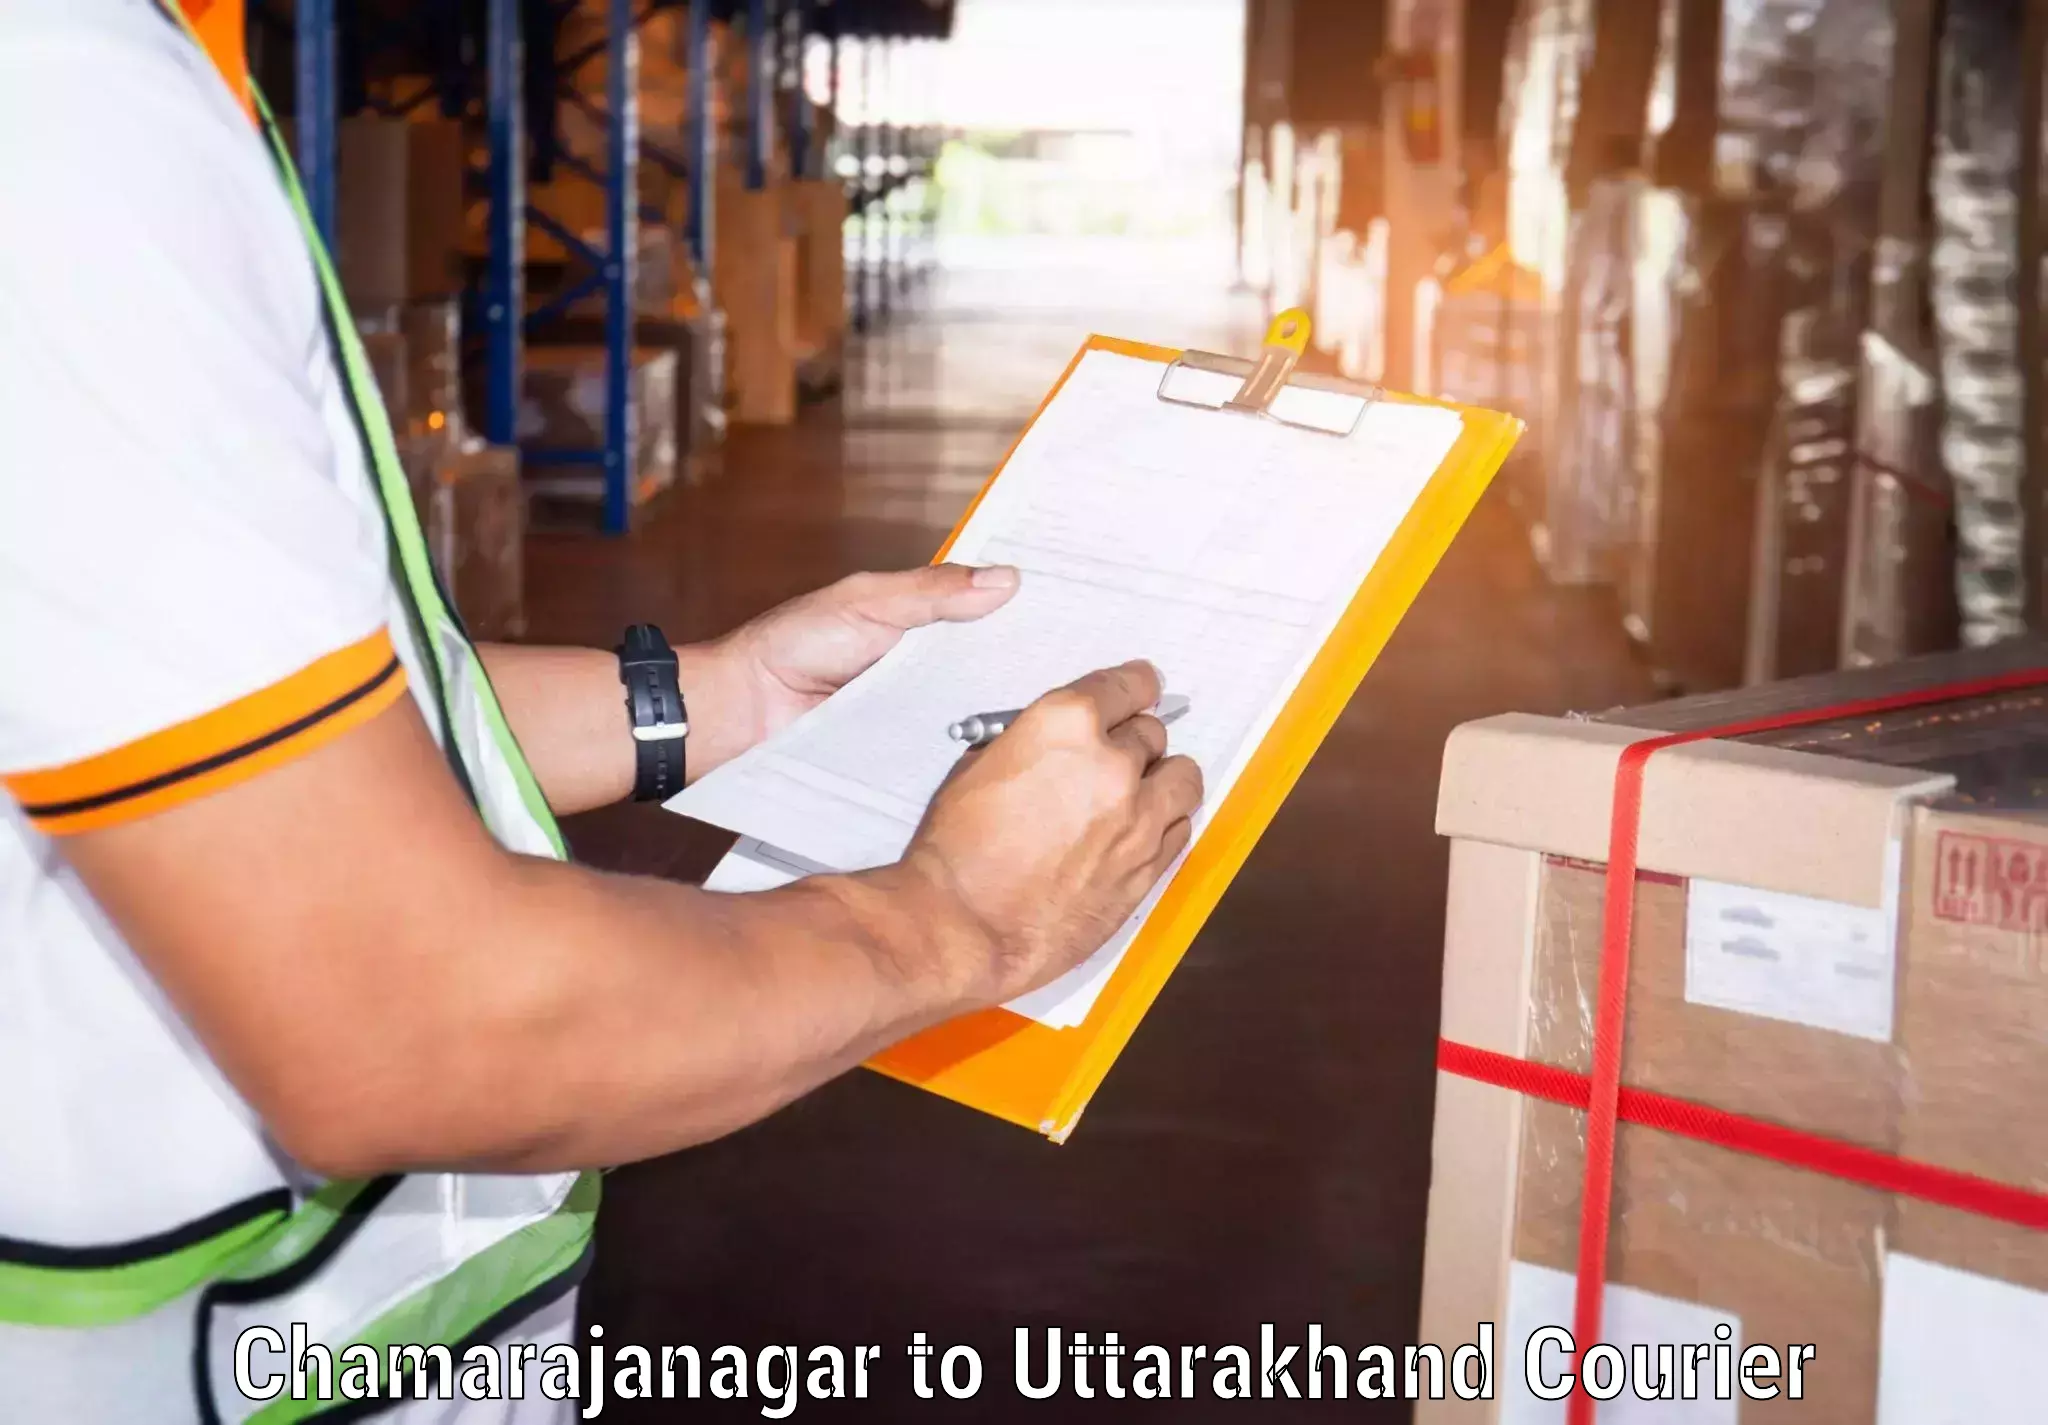 Urgent courier needs Chamarajanagar to Rishikesh